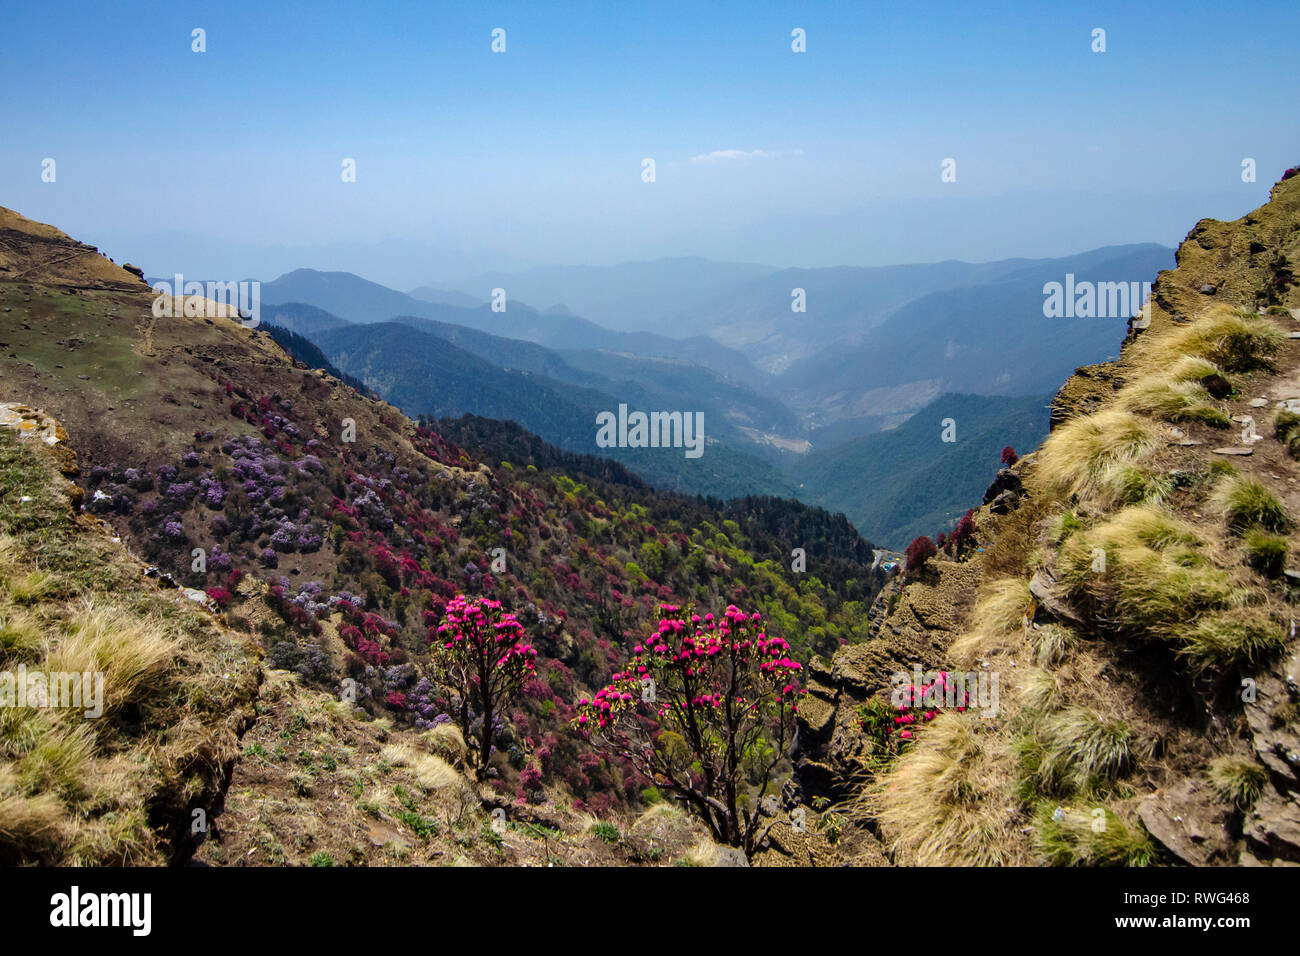 Valle pittoresca vista dal picco Tungnath, Garhwal, Uttarakhand, India. Foto Stock